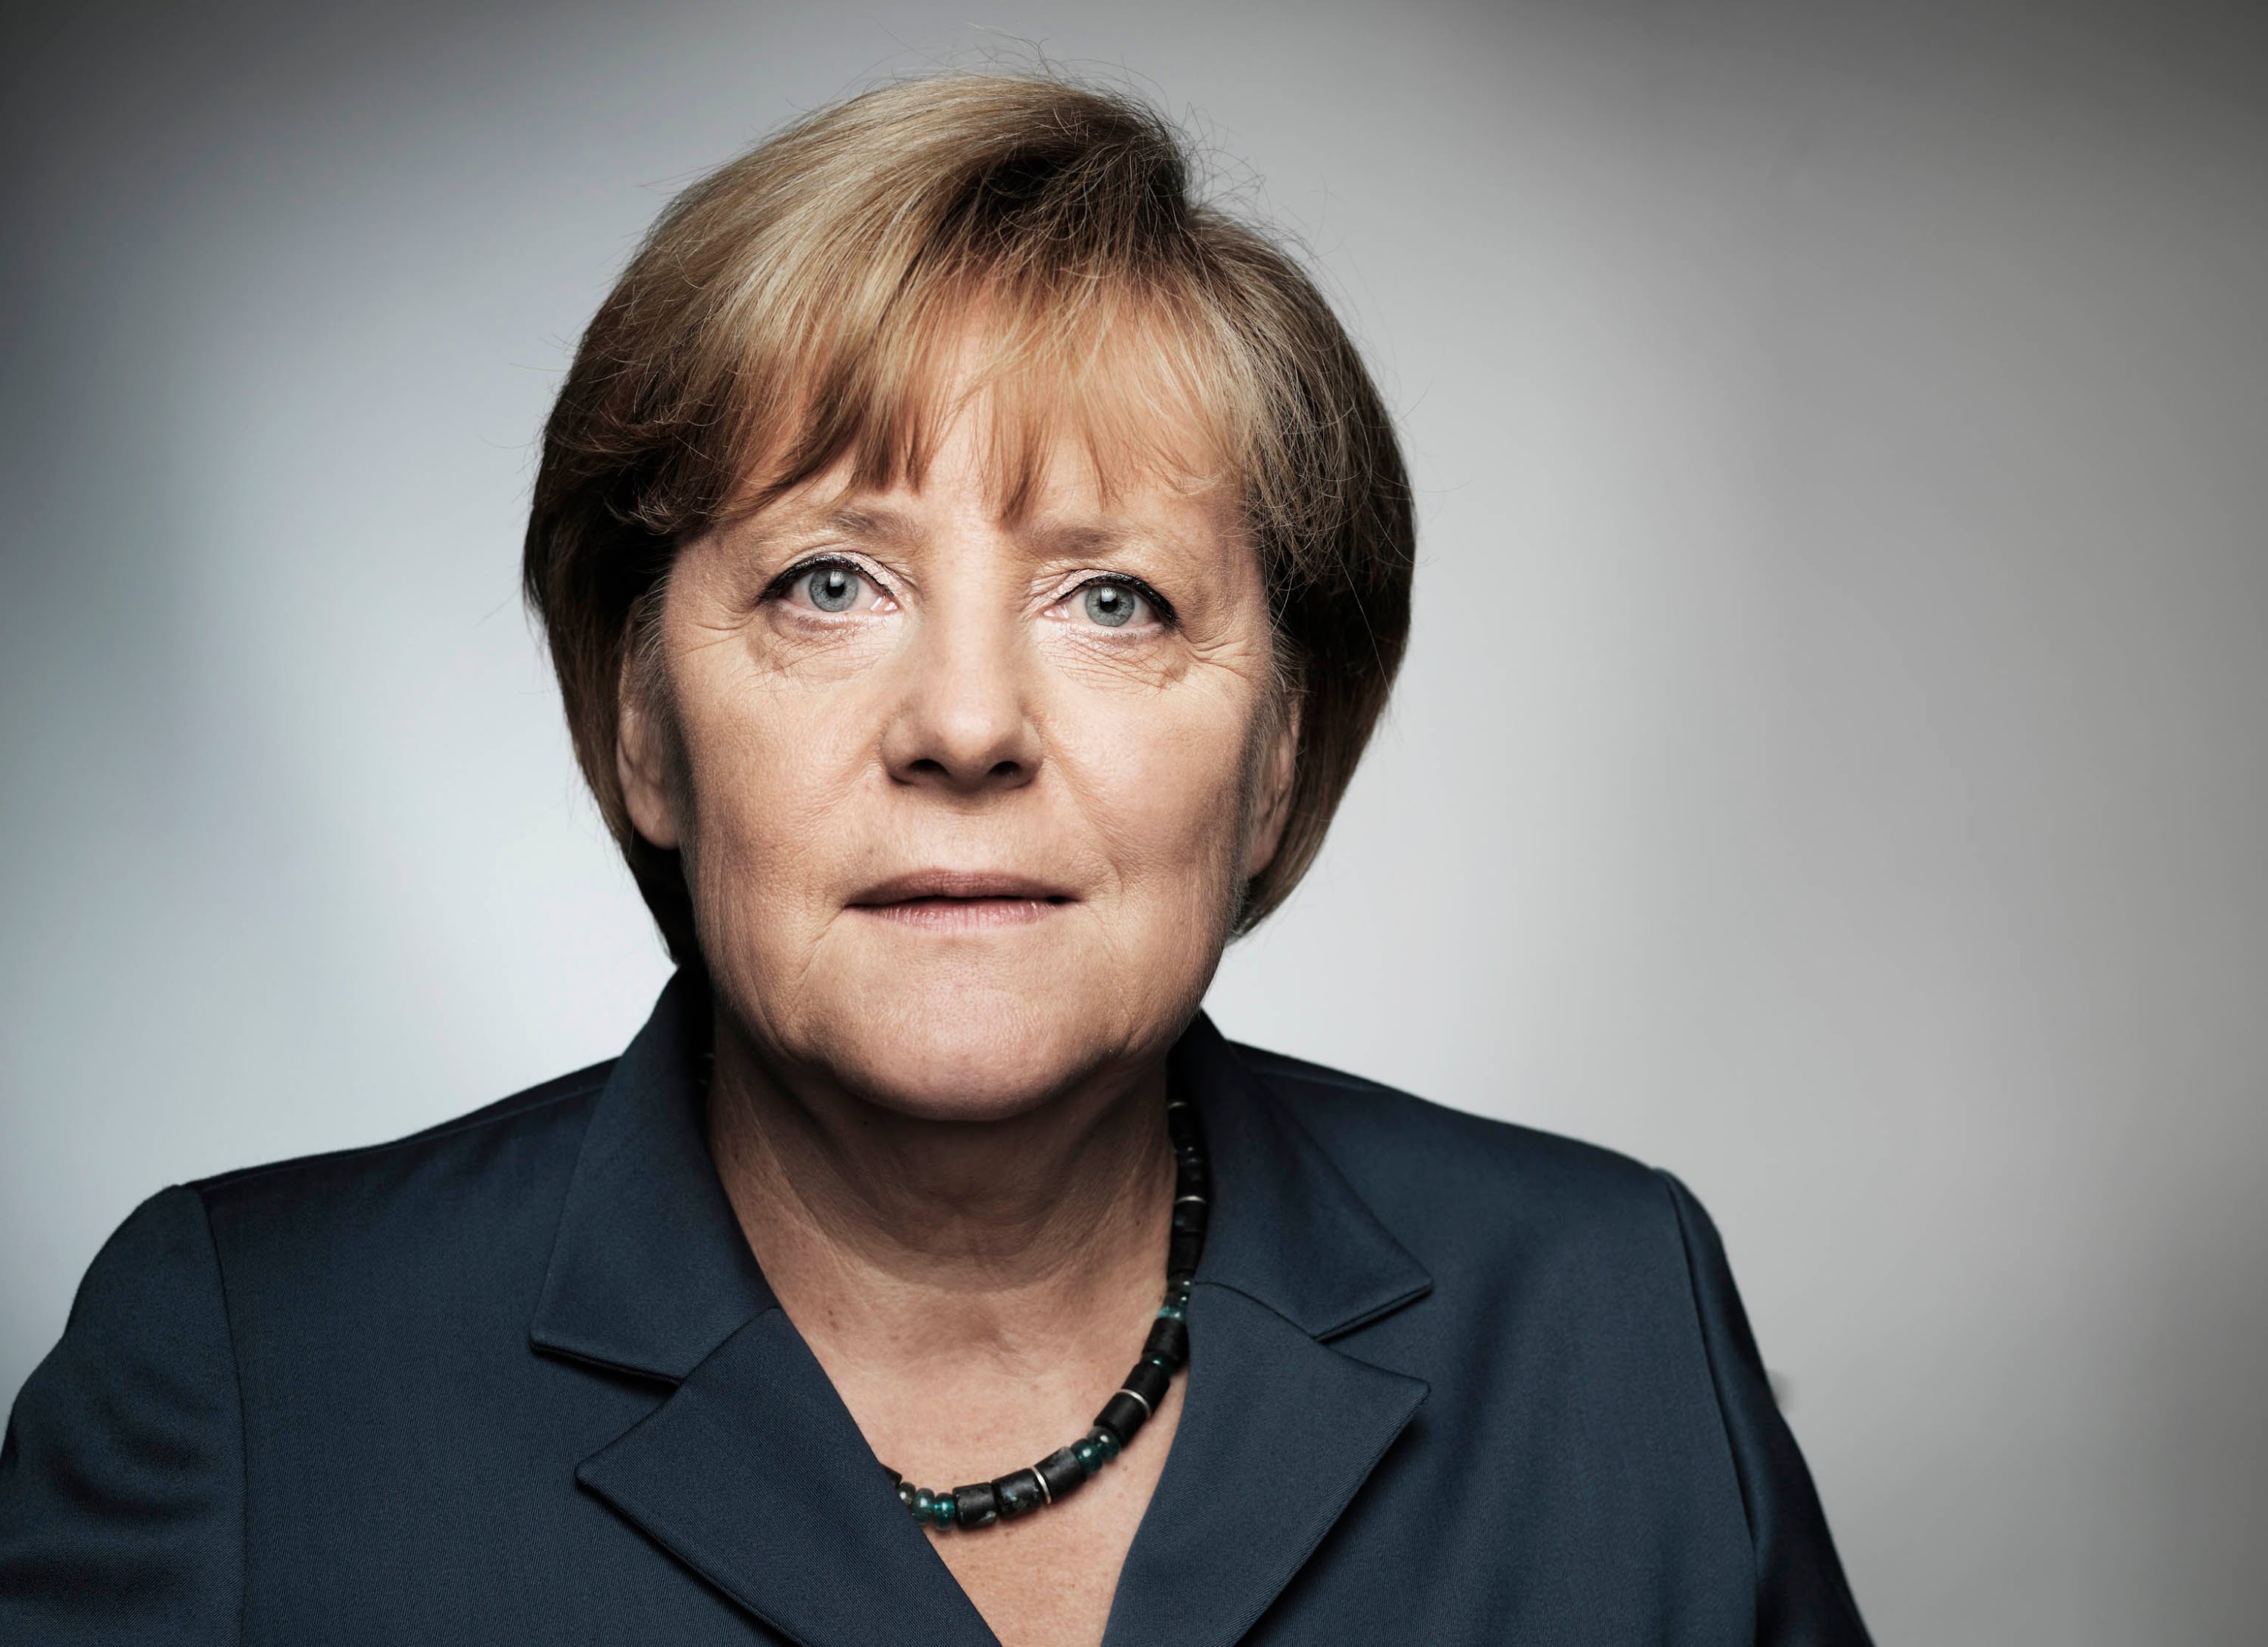 Angela Merkel'in Zeytin Dalı Harekatı açıklamasına Dışişleri Bakanlığı'ndan tepki